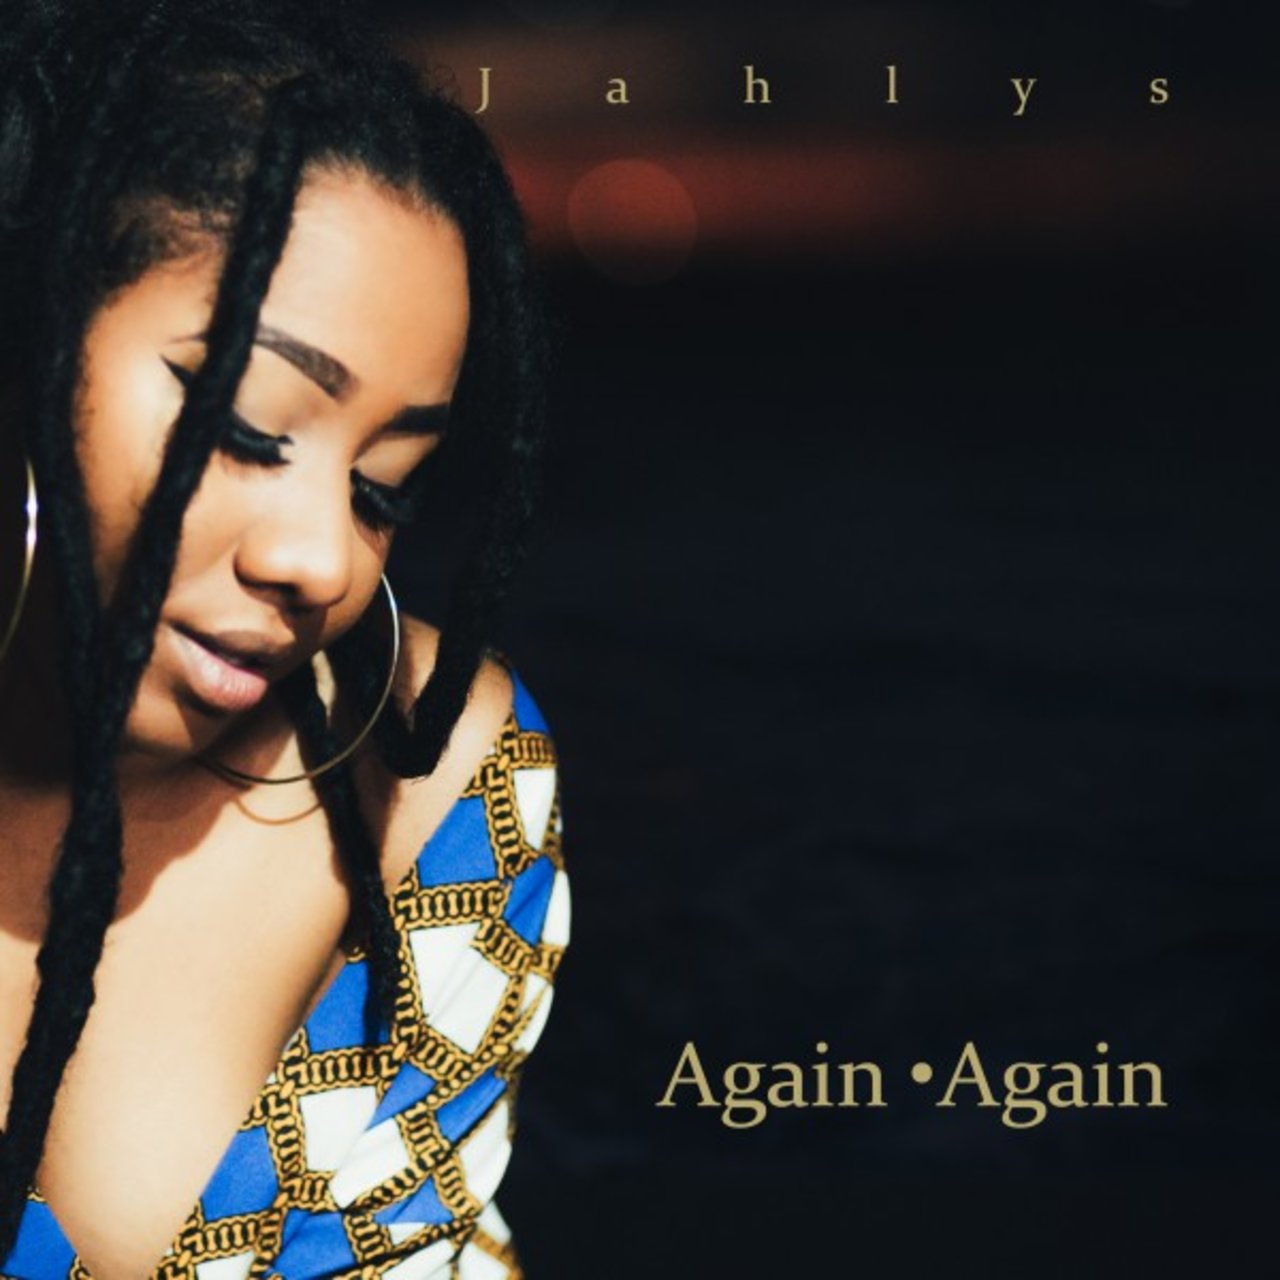 Jahlys - Again Again (Cover)